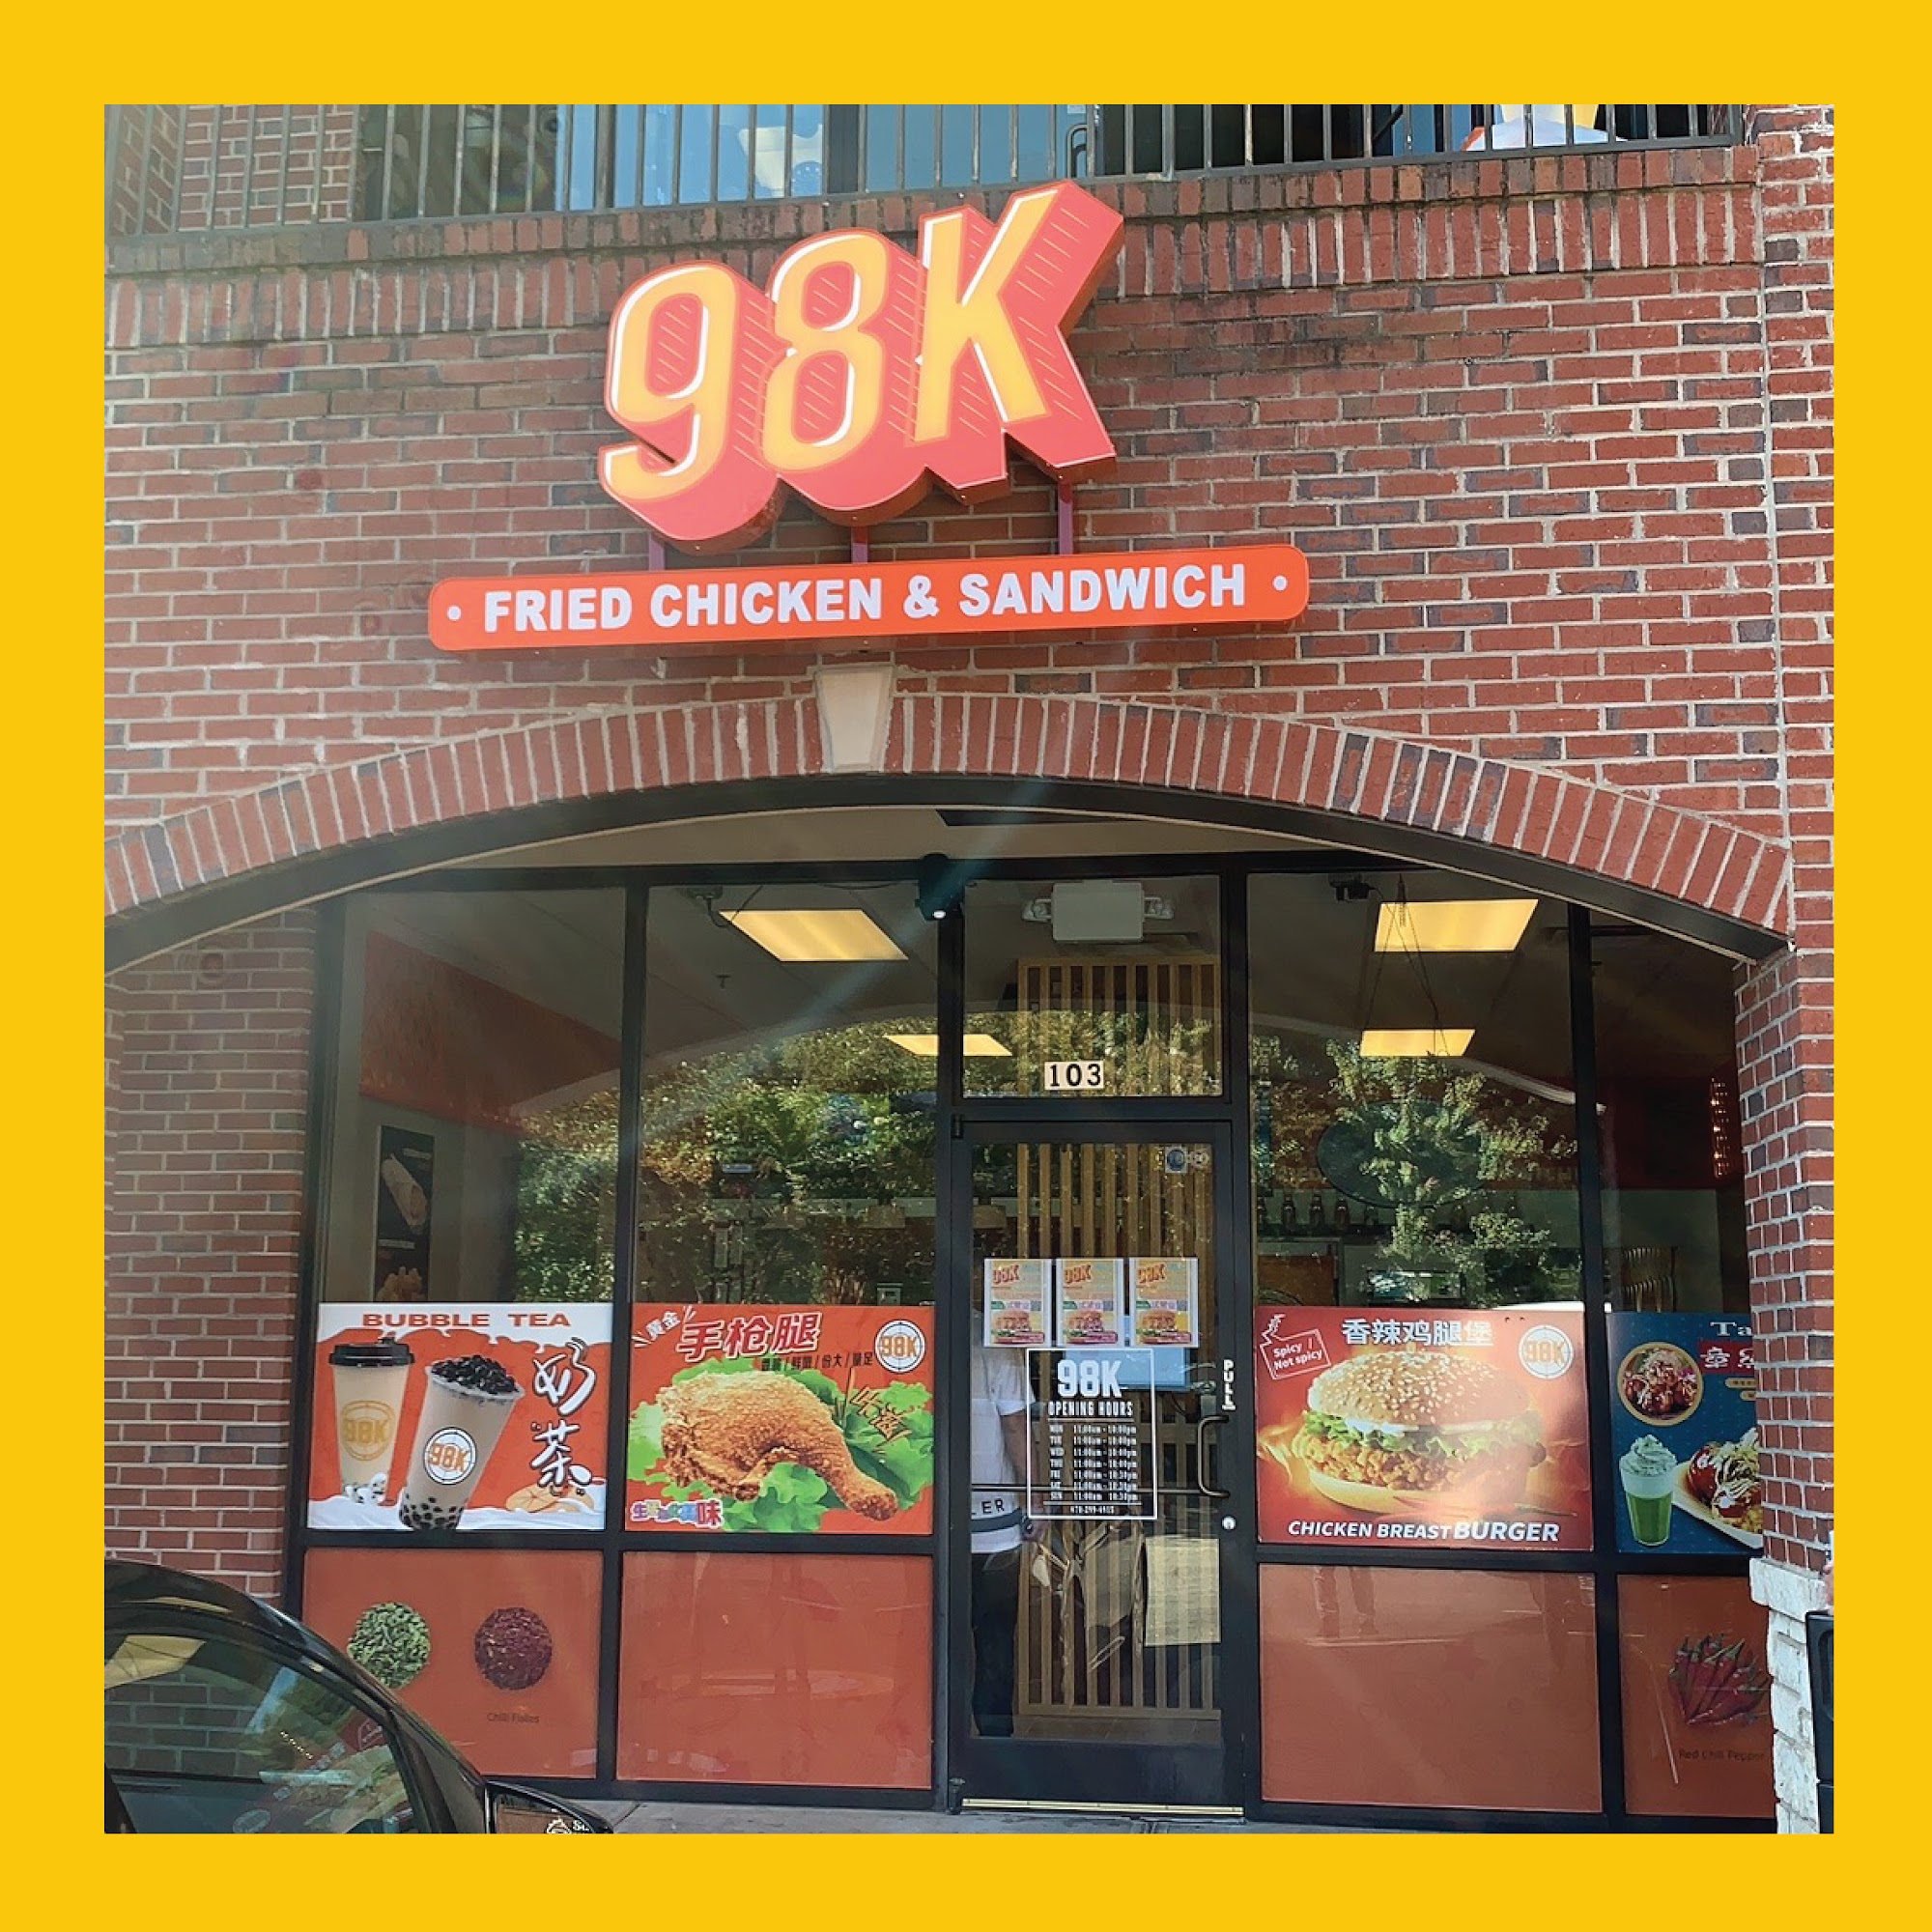 98K - Fried Chicken & Sandwiches